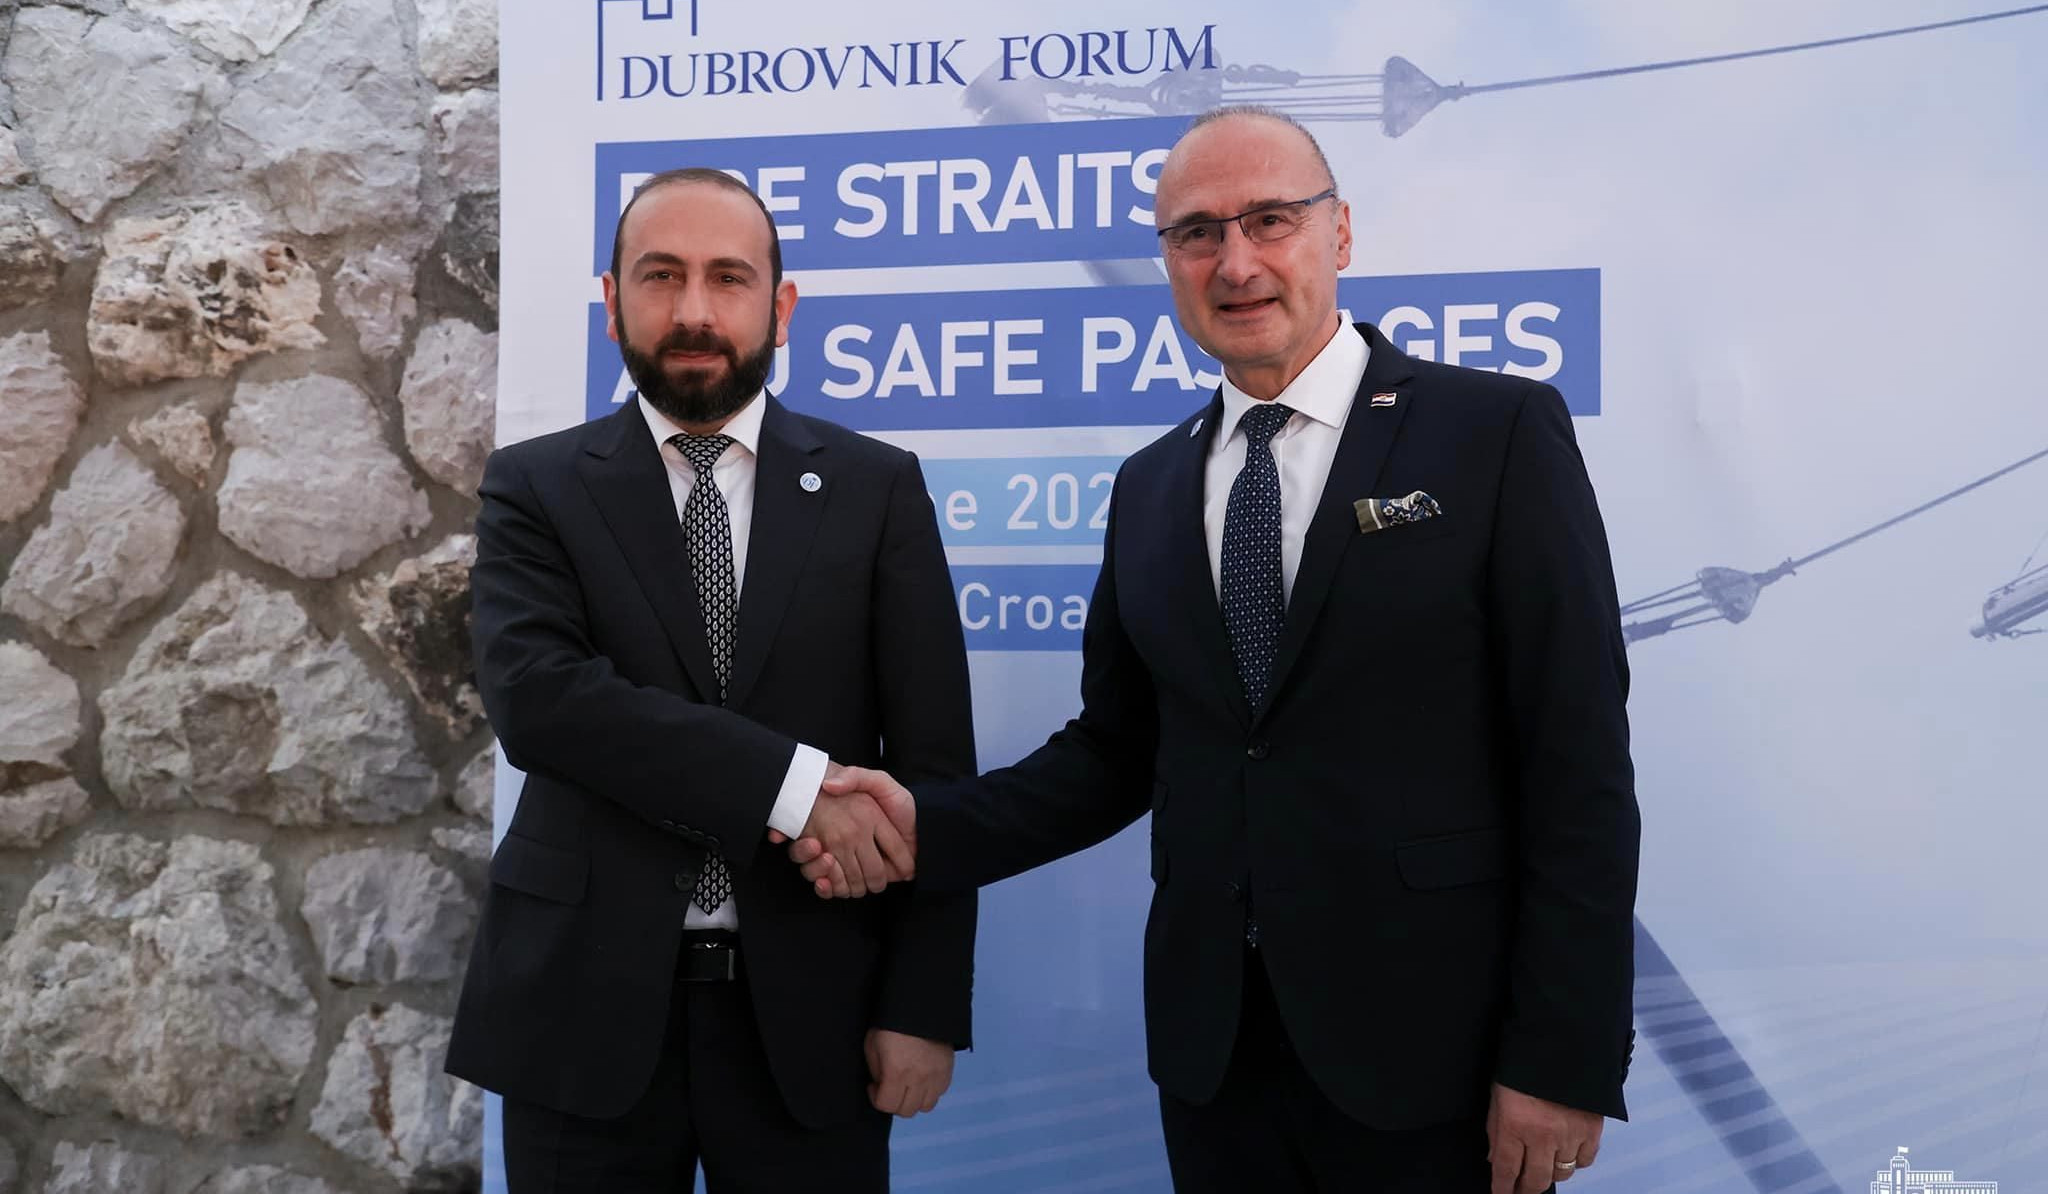 Министр иностранных дел принял участие в официальном приеме по случаю открытия Дубровницкого форума